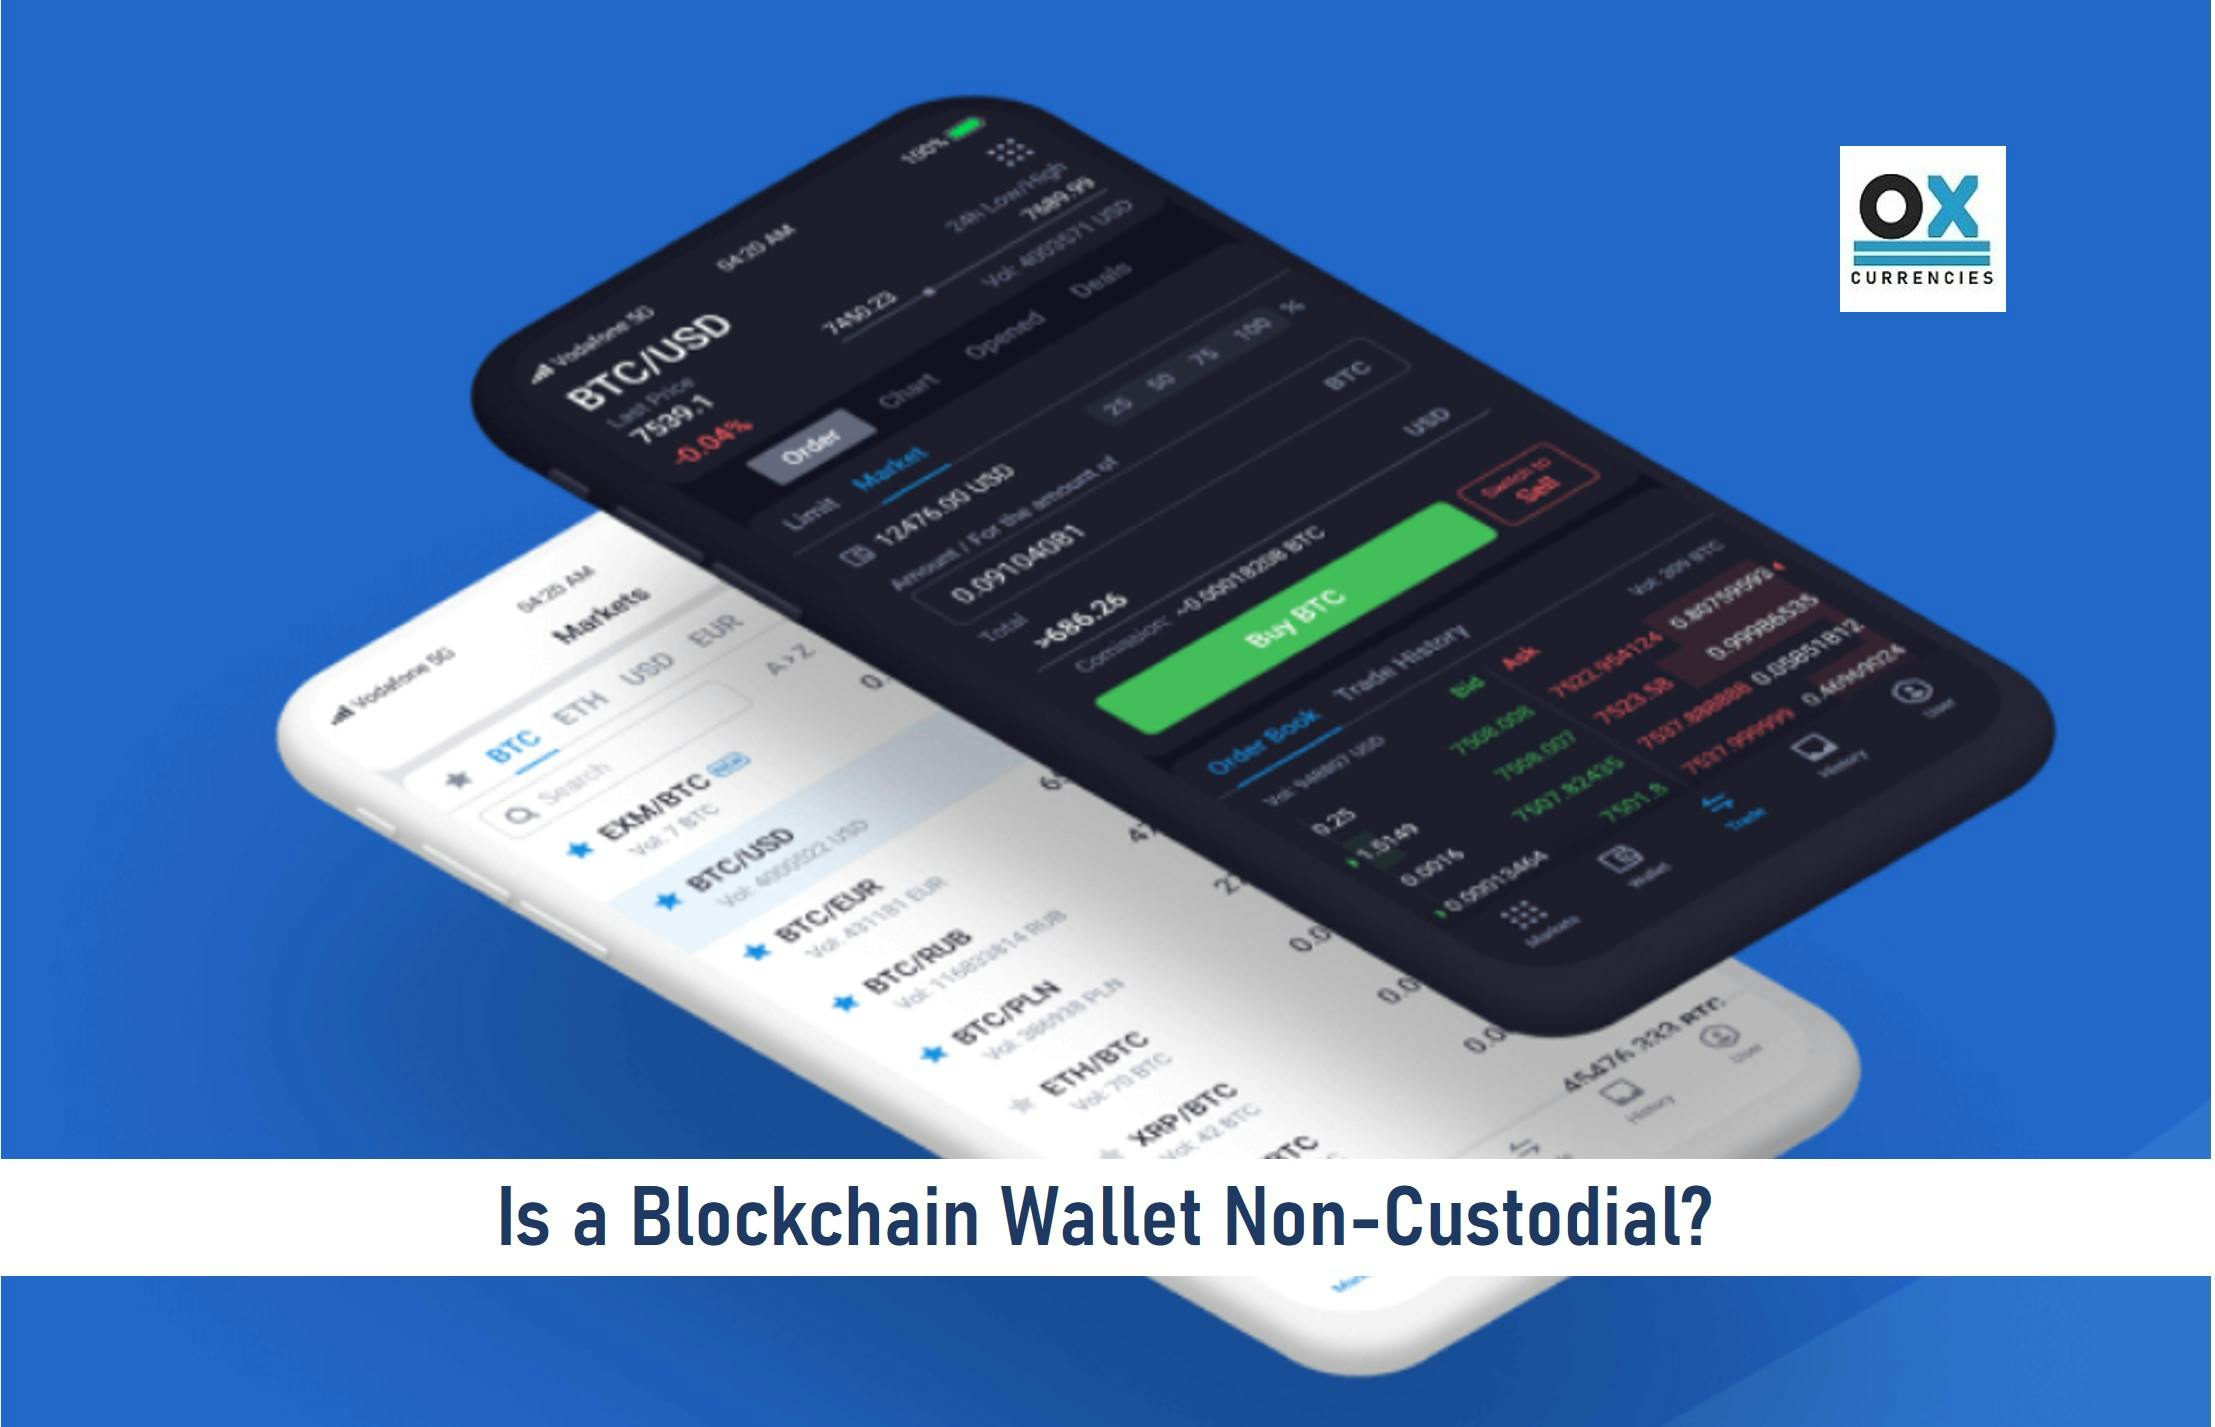 Are Blockchain Wallets Non-Custodial?